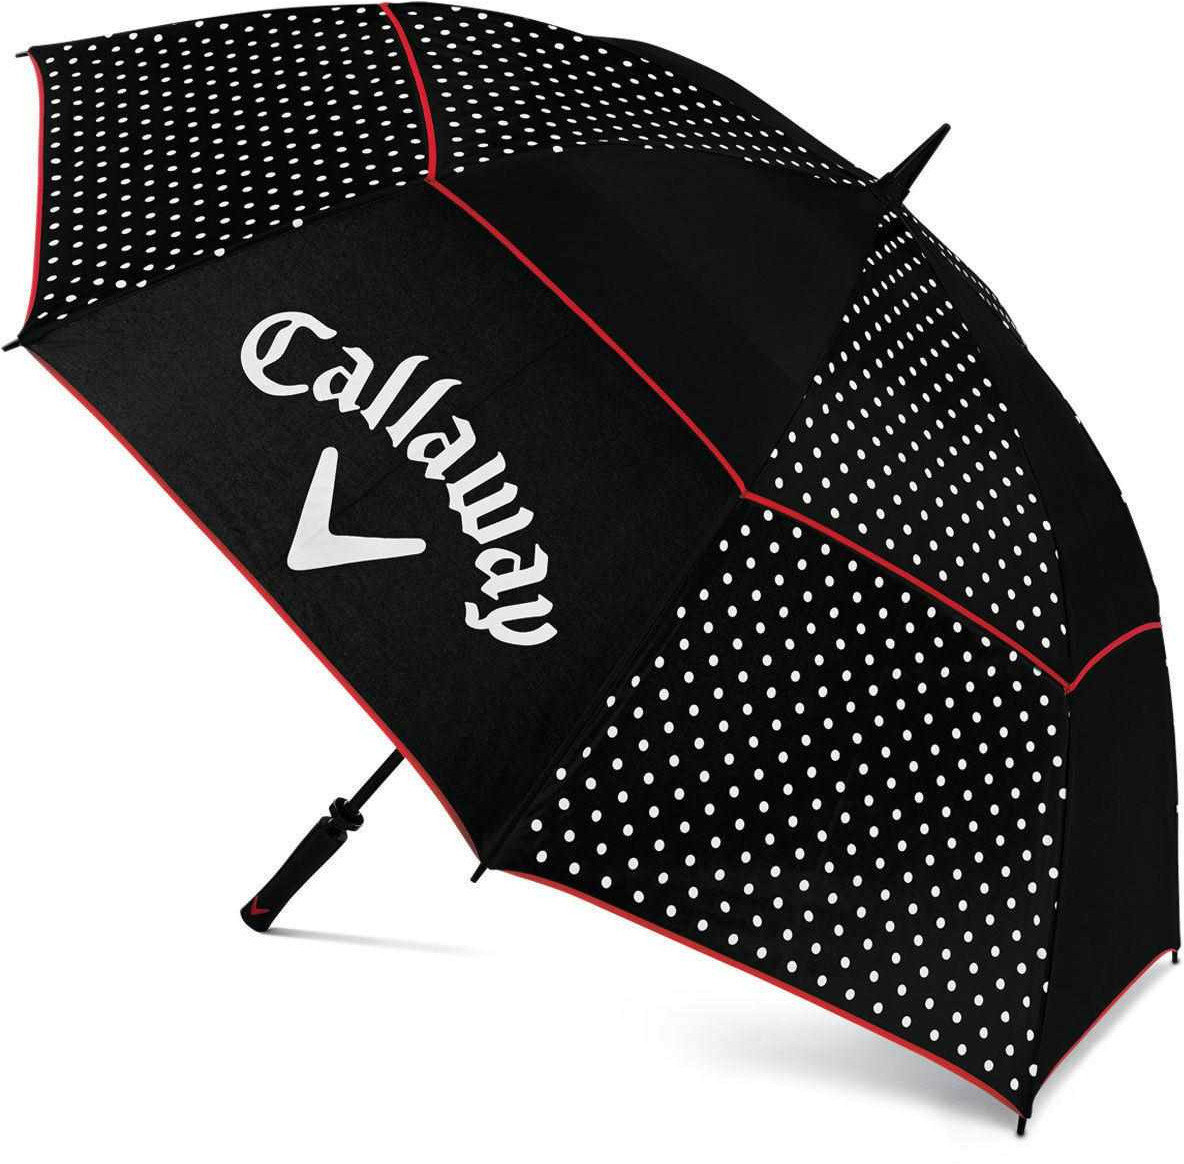 Paraplu Callaway Umbrella Blk/Wht